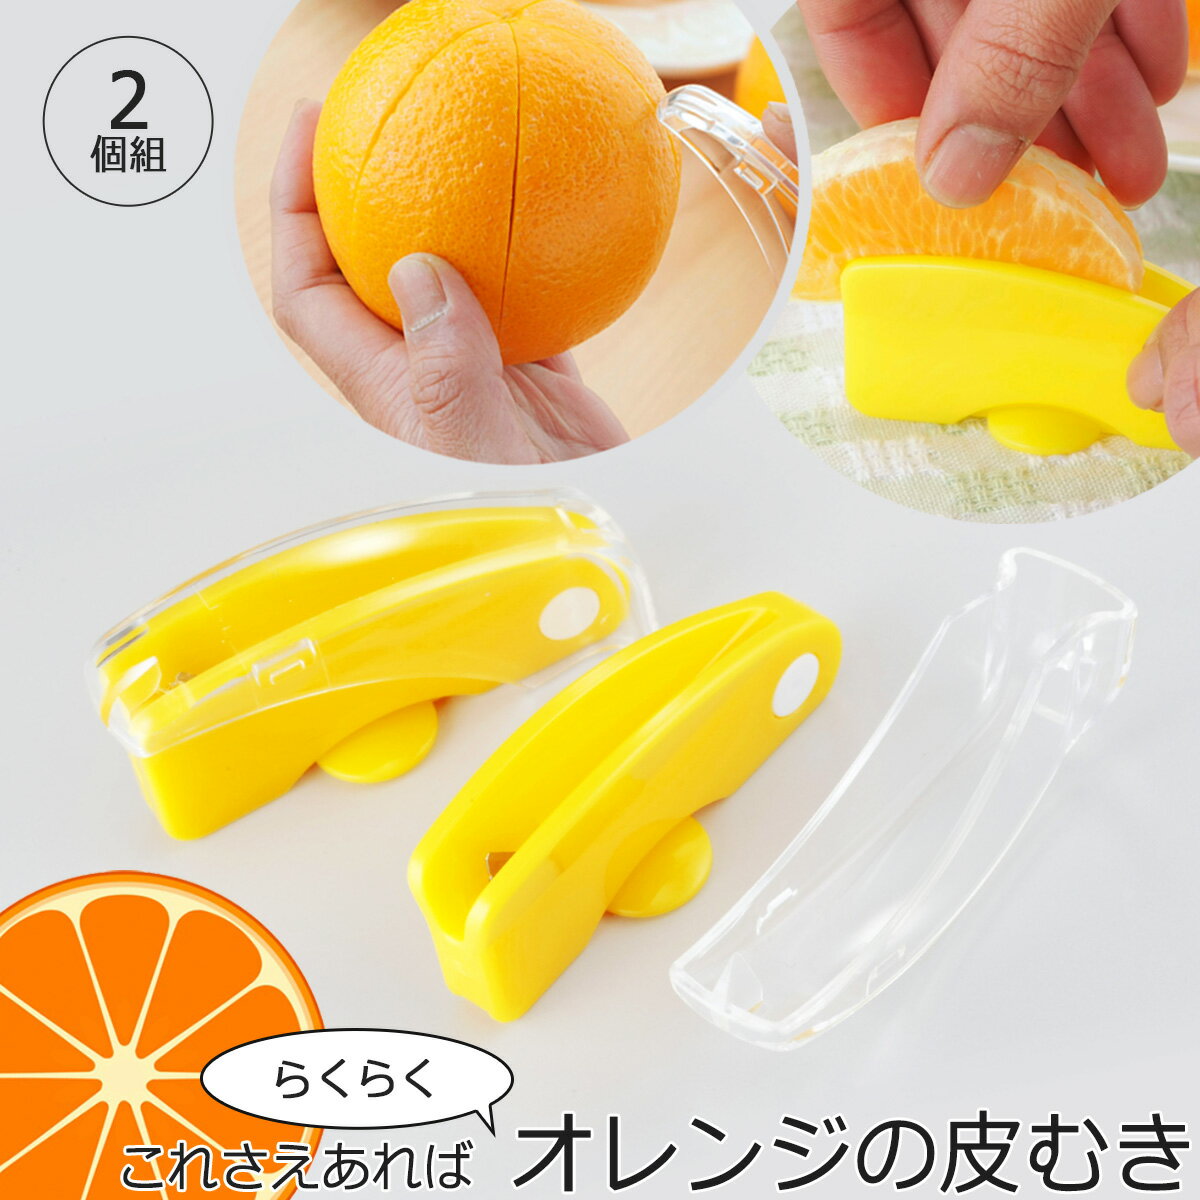 ラクラク 皮むき 2個組日本製 オレンジ 夏みかん はっさく みかん ピーラーフレッシュ フルーツ パフェデザート 下村企販